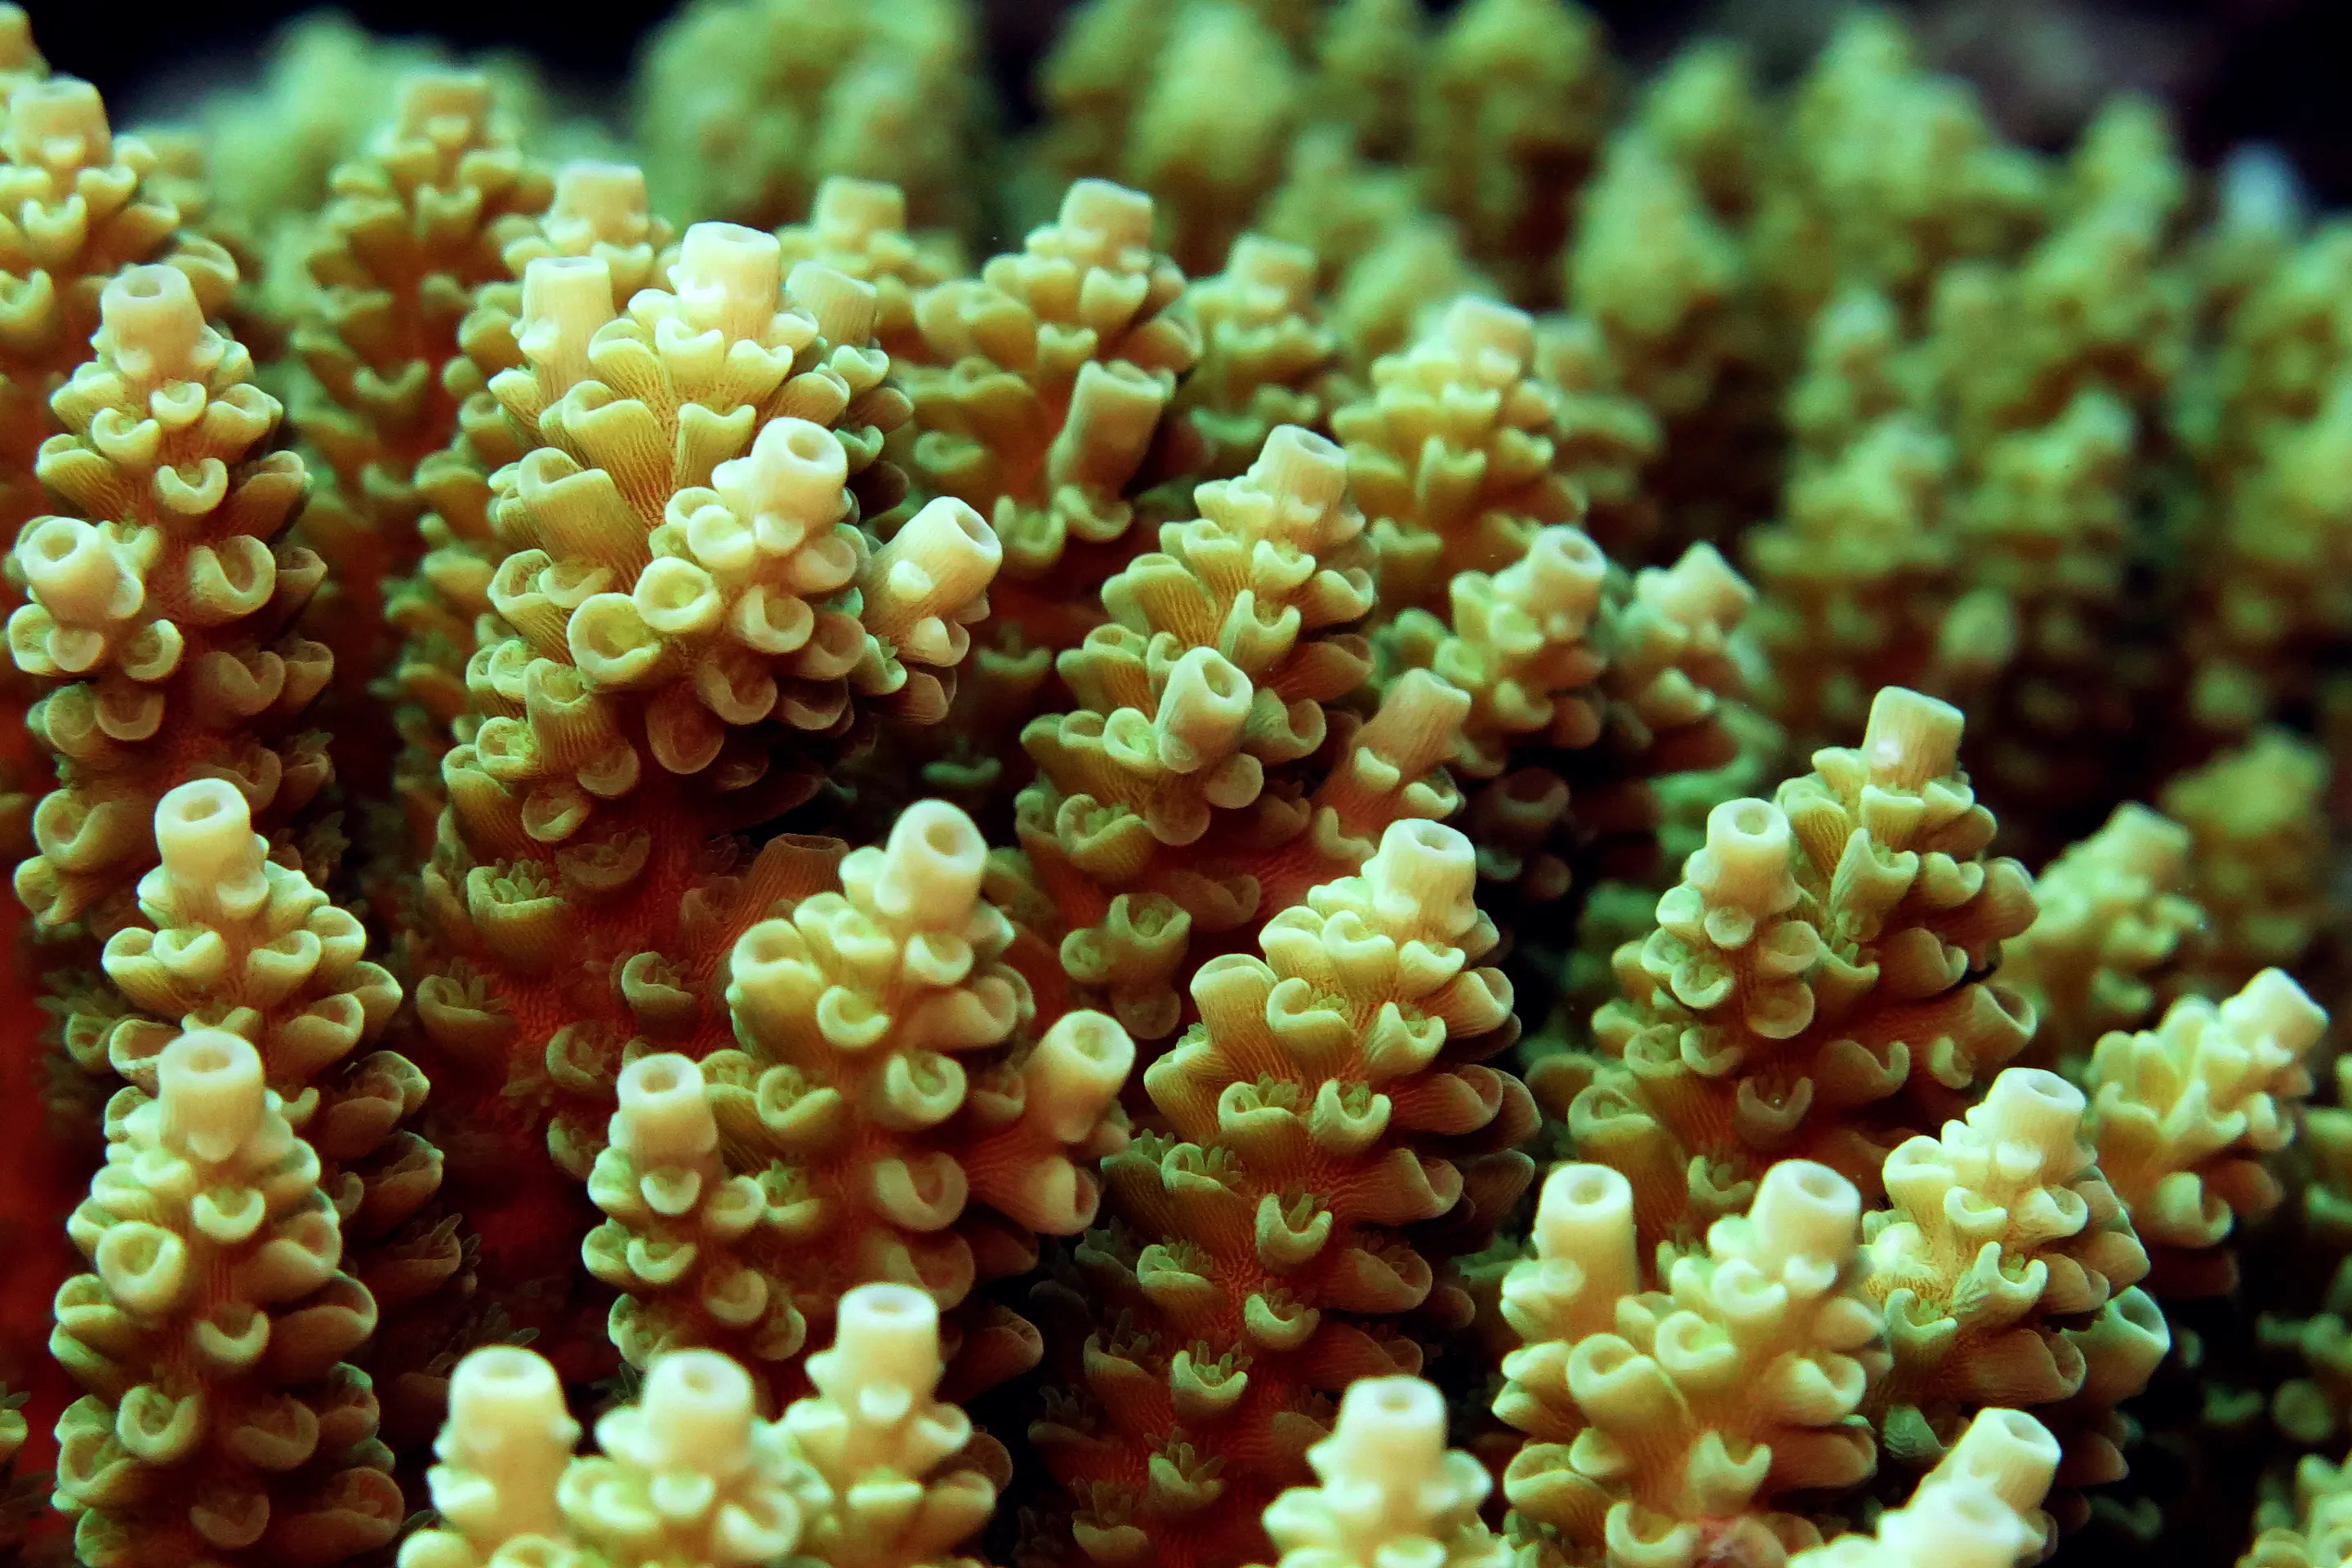 Родственники хламидий могут спасти коралловые рифы от гибели